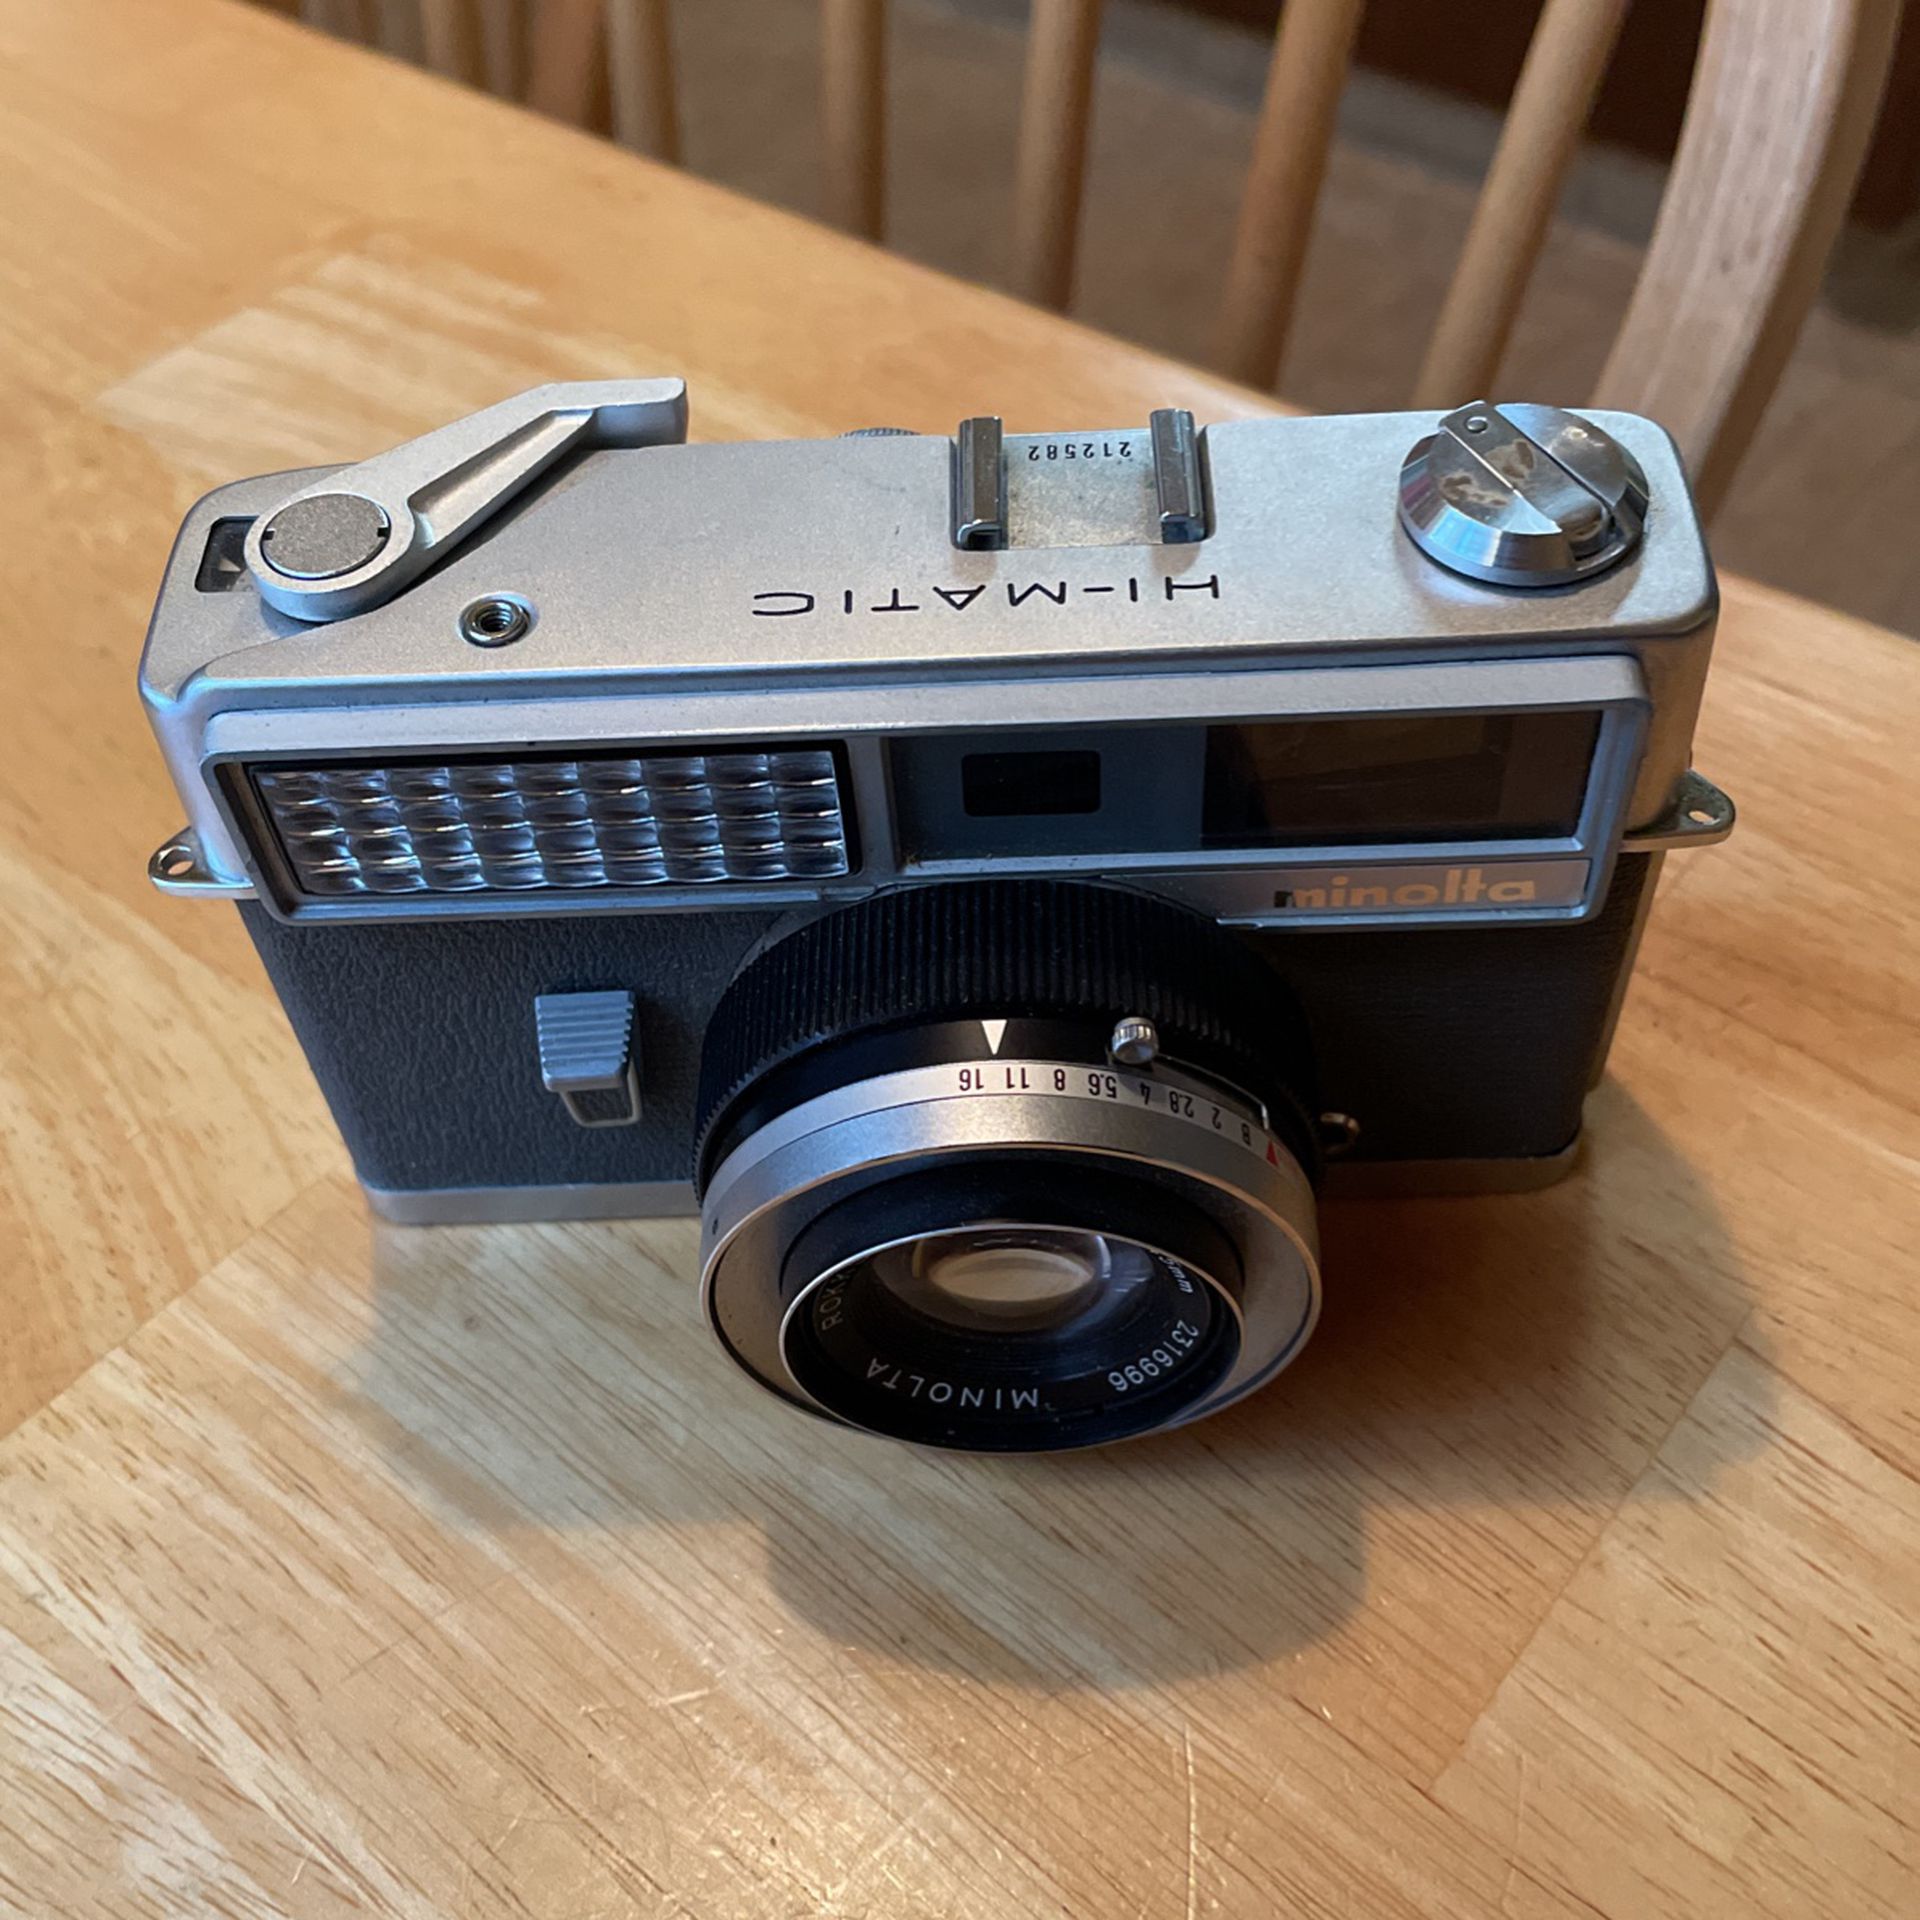 Vintage Minolta Hi-Magic Camera